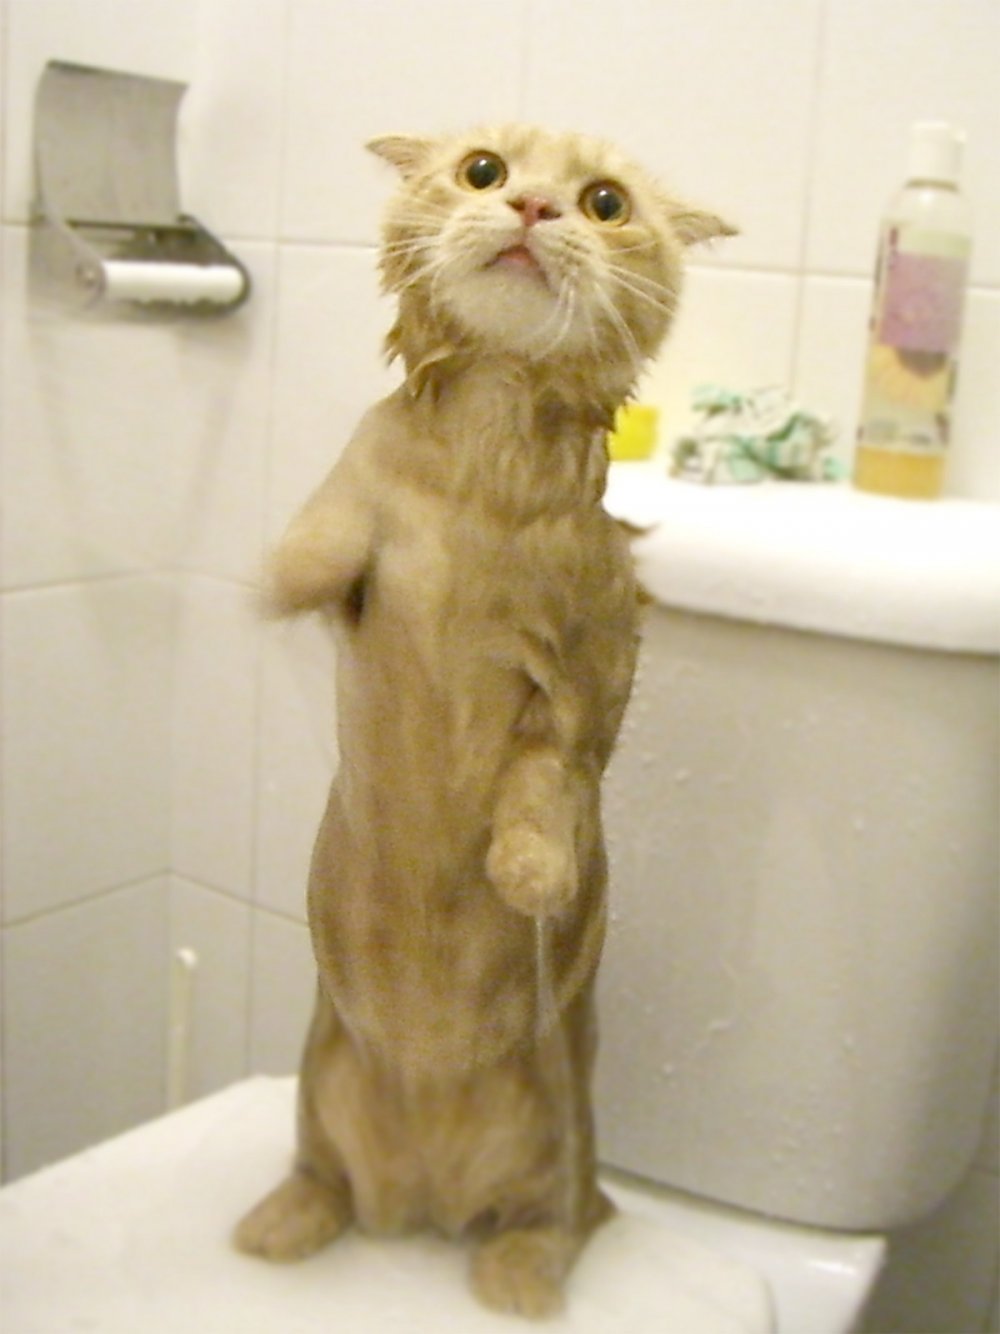 Смешной мокрый кот